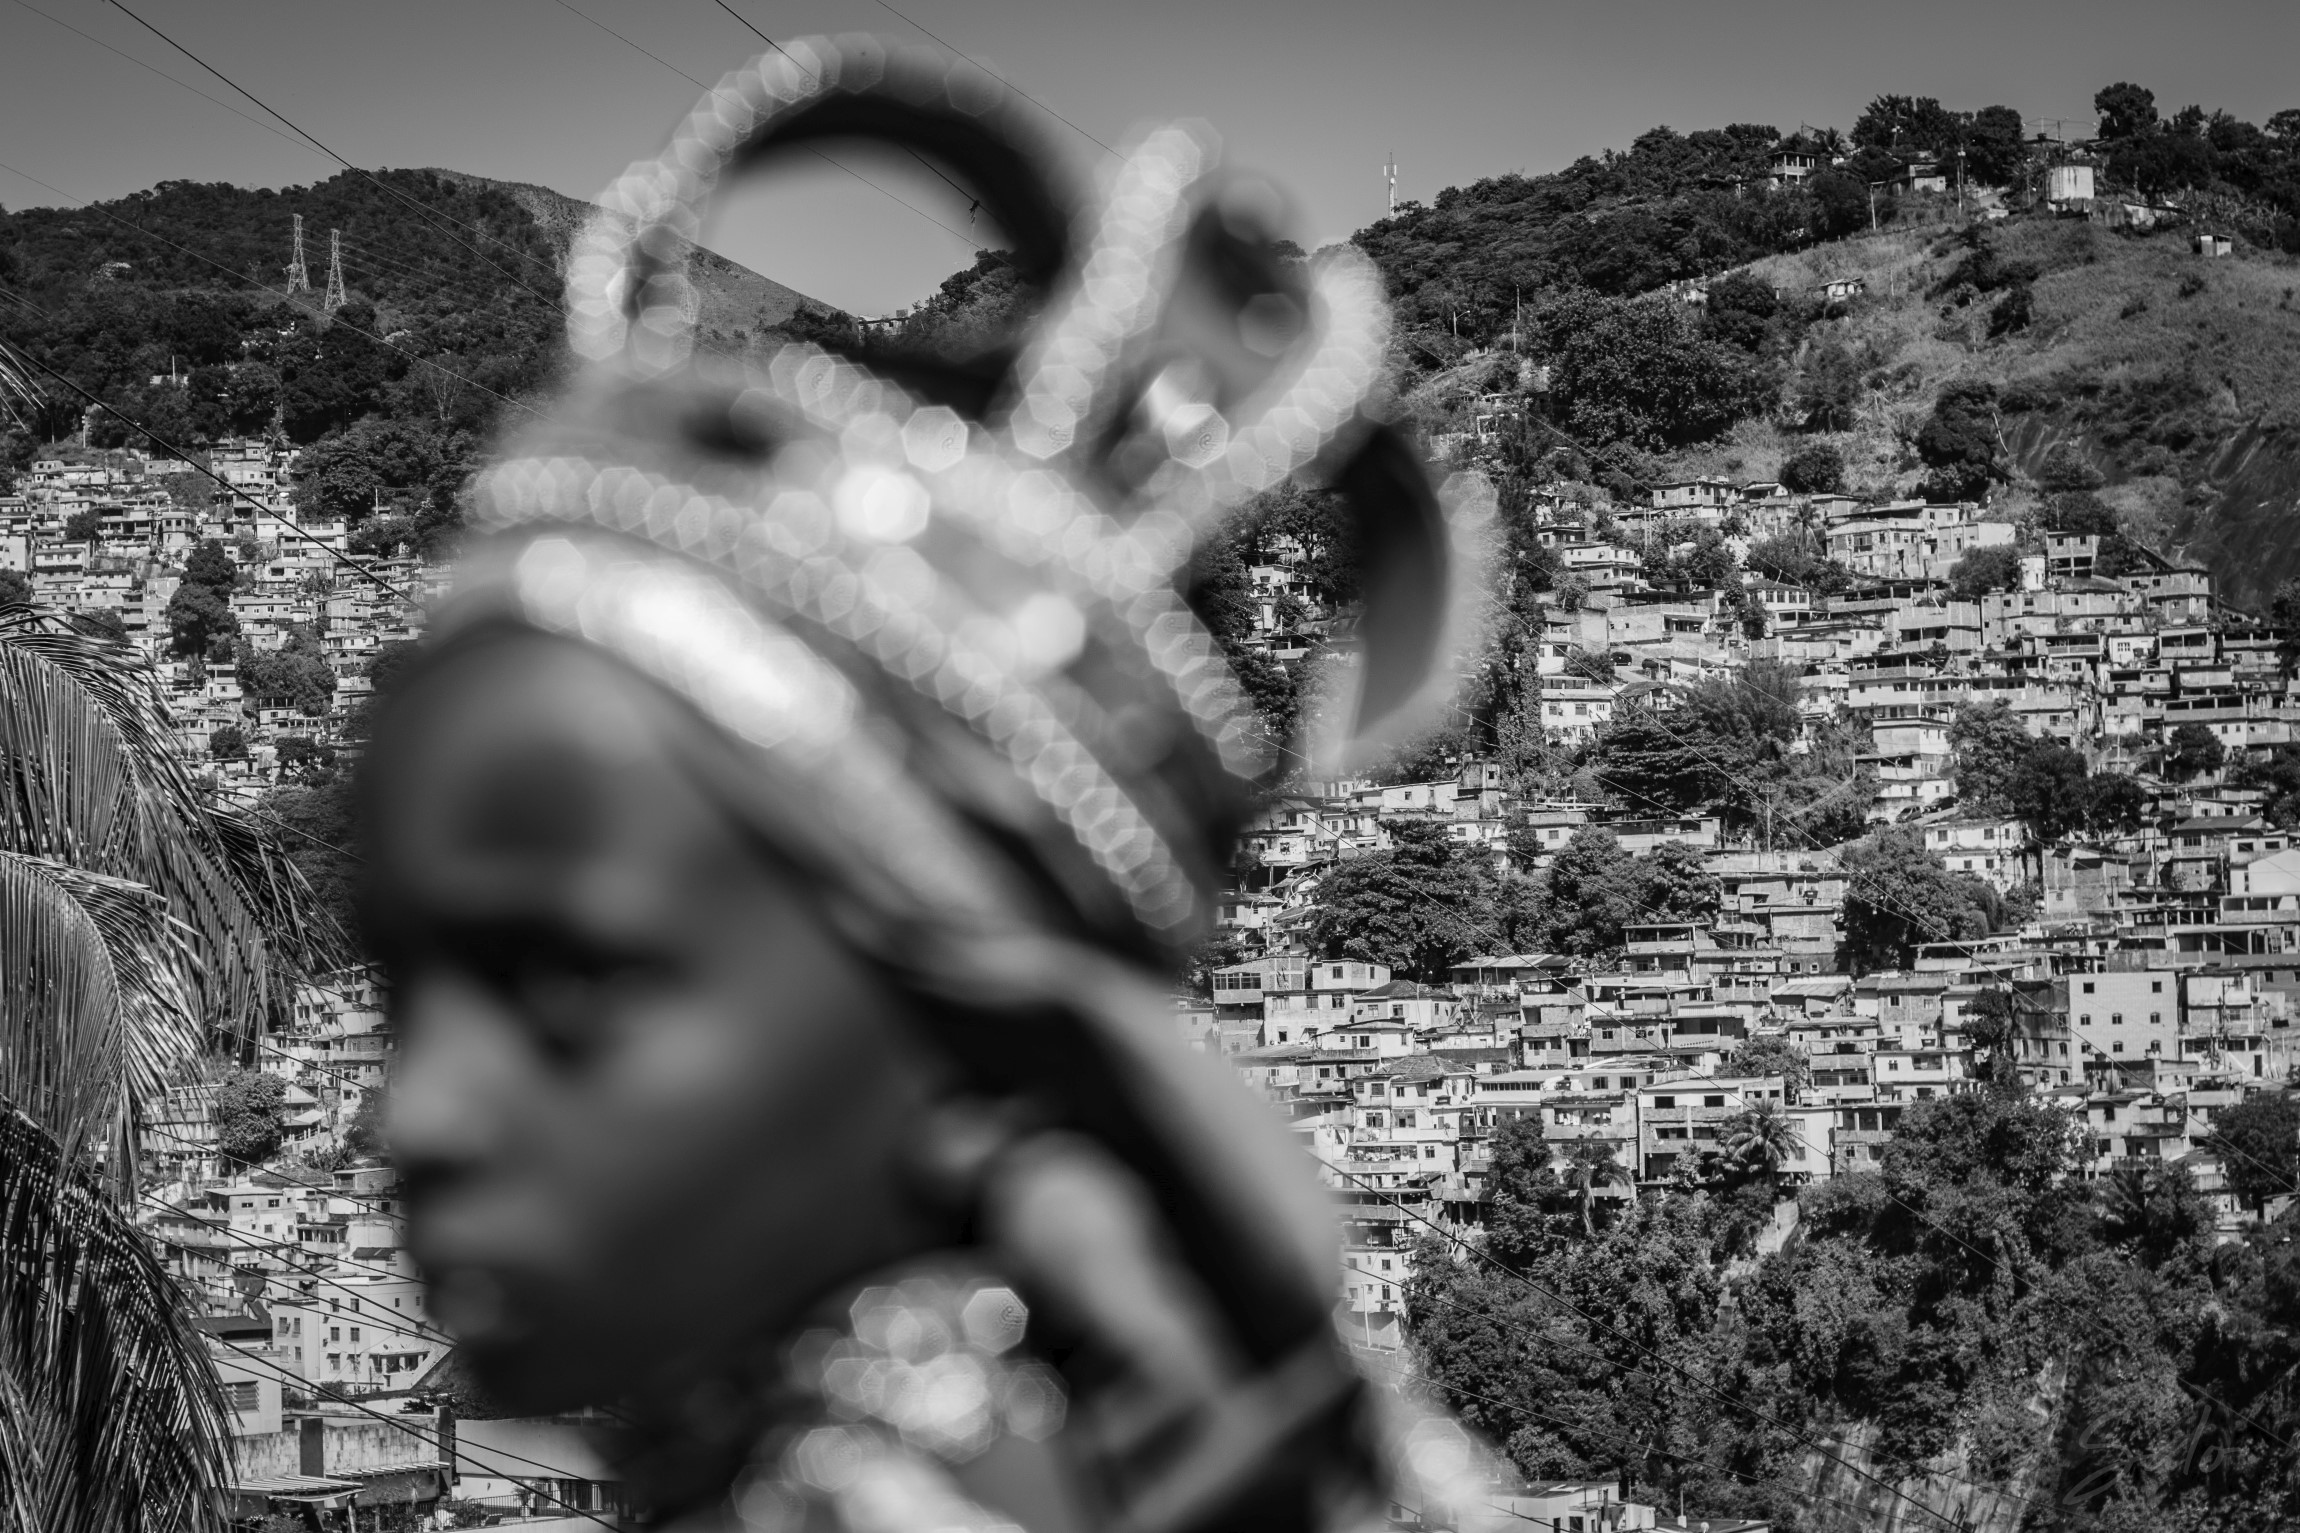 Foto em preto e branco de uma mulher negra usando uma coroa, retratada em primeiro plano desfocado e o plano de fundo em foco apresentando uma favela construída em um morro. Fotografia de Leonardo Salo.